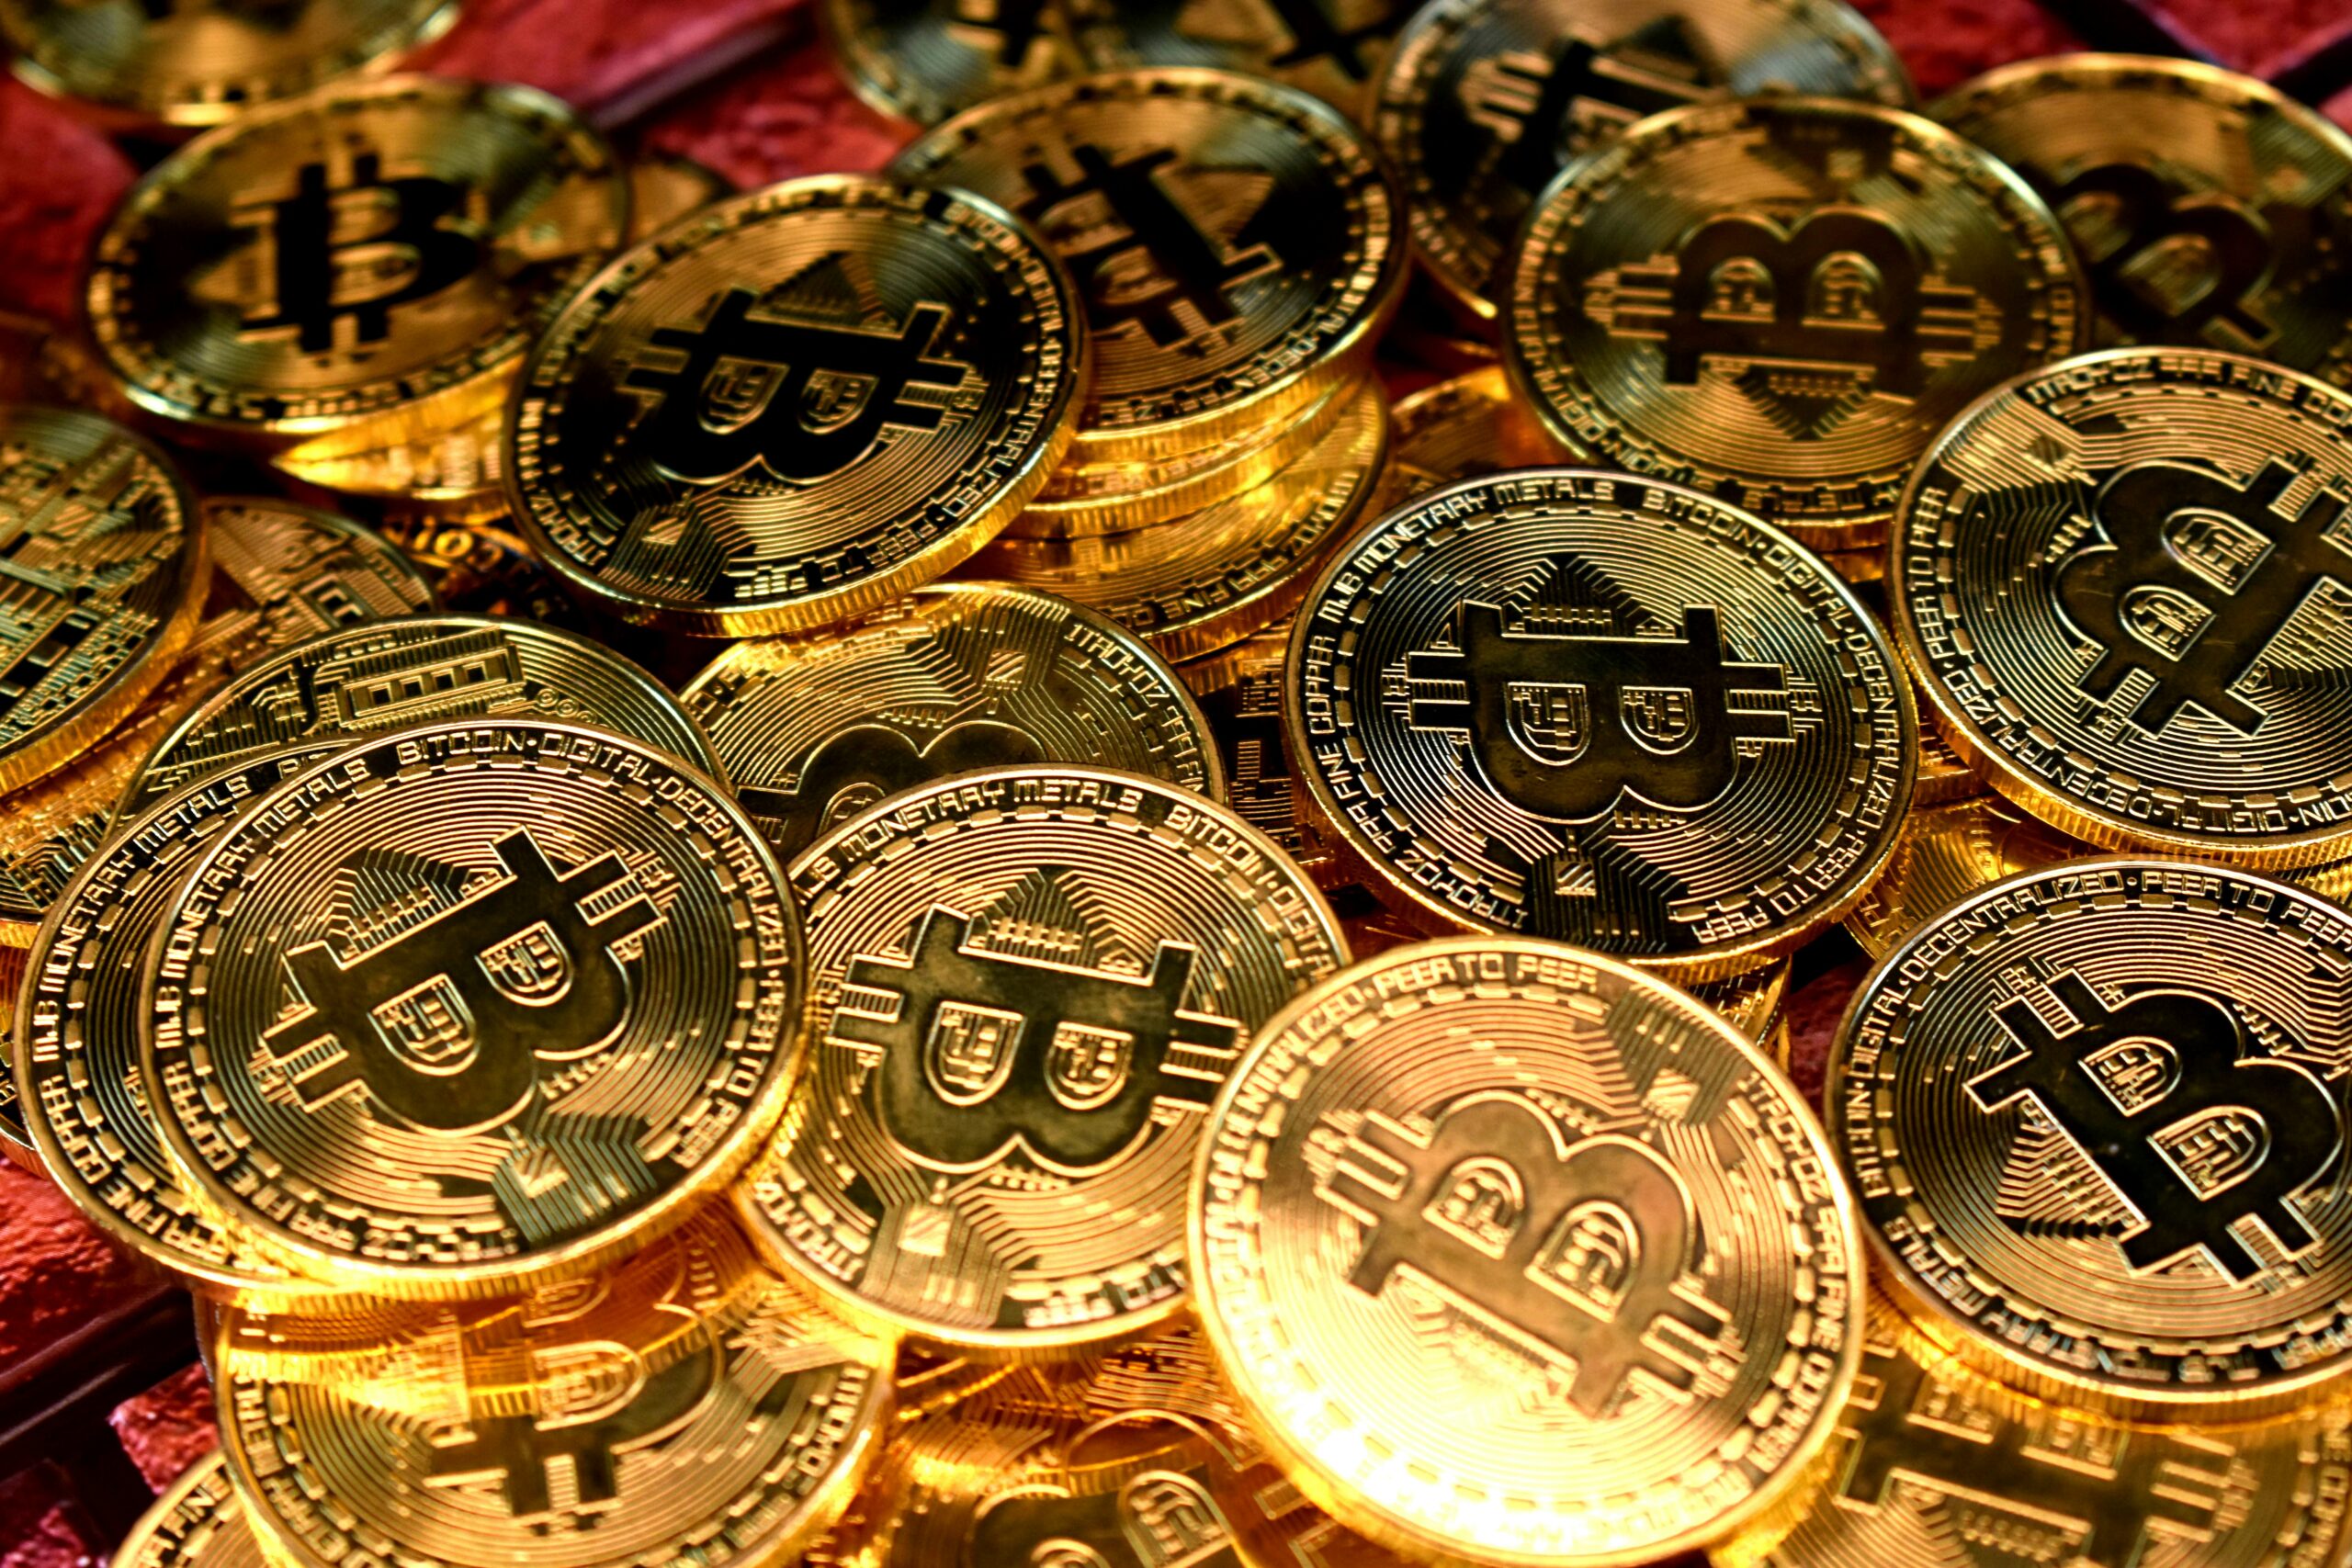 Det tog bara sju veckor för iShares Bitcoin ETF (IBIT) att passera över 10 miljarder dollar i förvaltad volym, det snabbaste takten för en ETF någonsin. Det tidigare rekordet hölls av den första guld-ETFen GLD, som tog över 2 år att nå det märket efter lanseringen i november 2004.